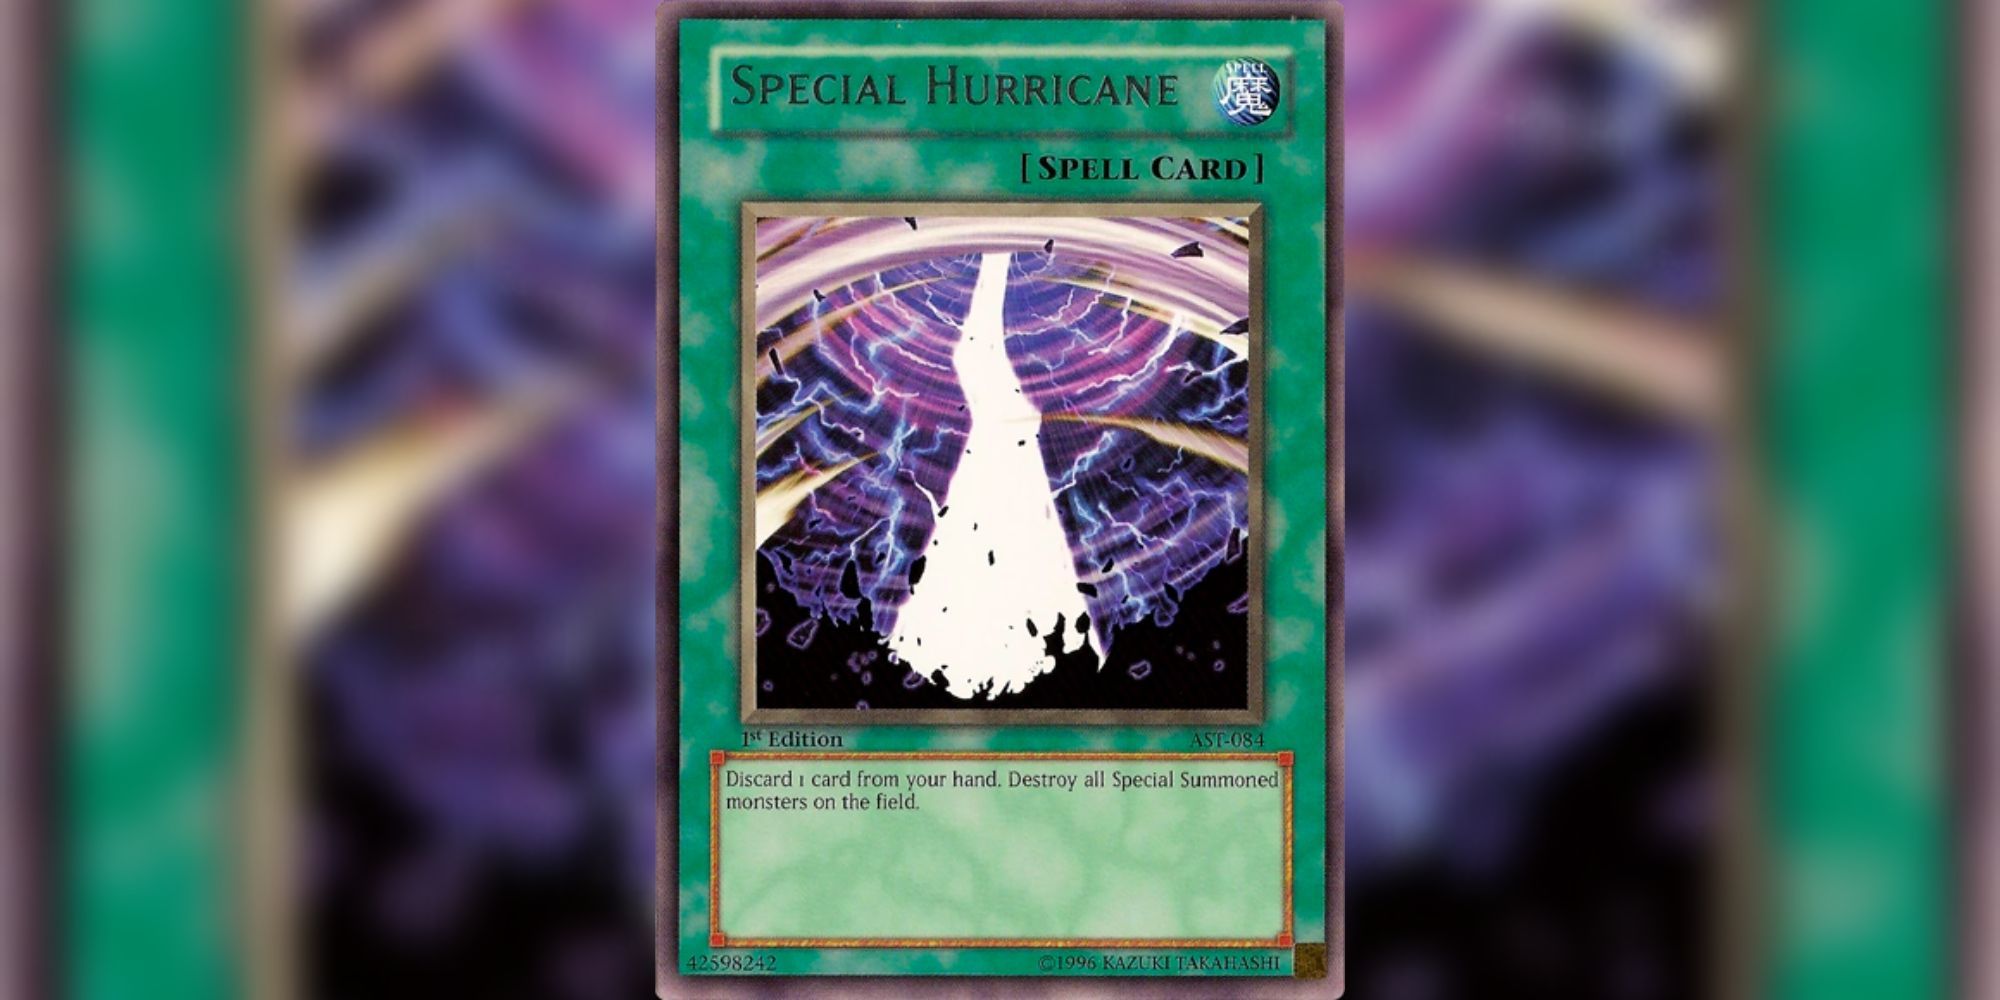 Special Hurricane card in Yu-Gi-Oh!